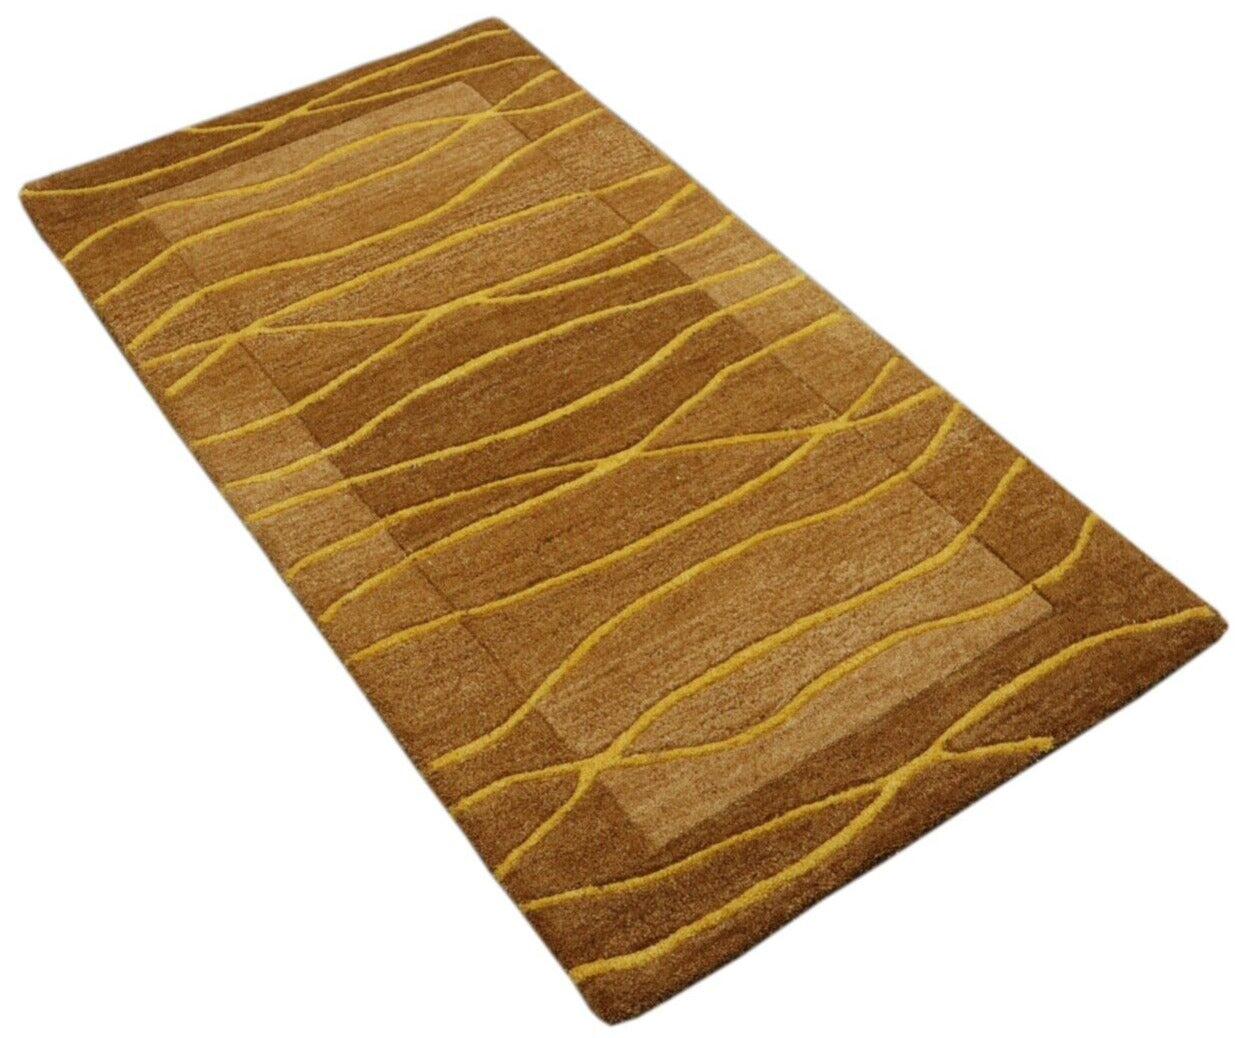 Teppich 100% Wolle 70X140 cm Handarbeit Kaffeefarbe Gold Handgetuftet T1021